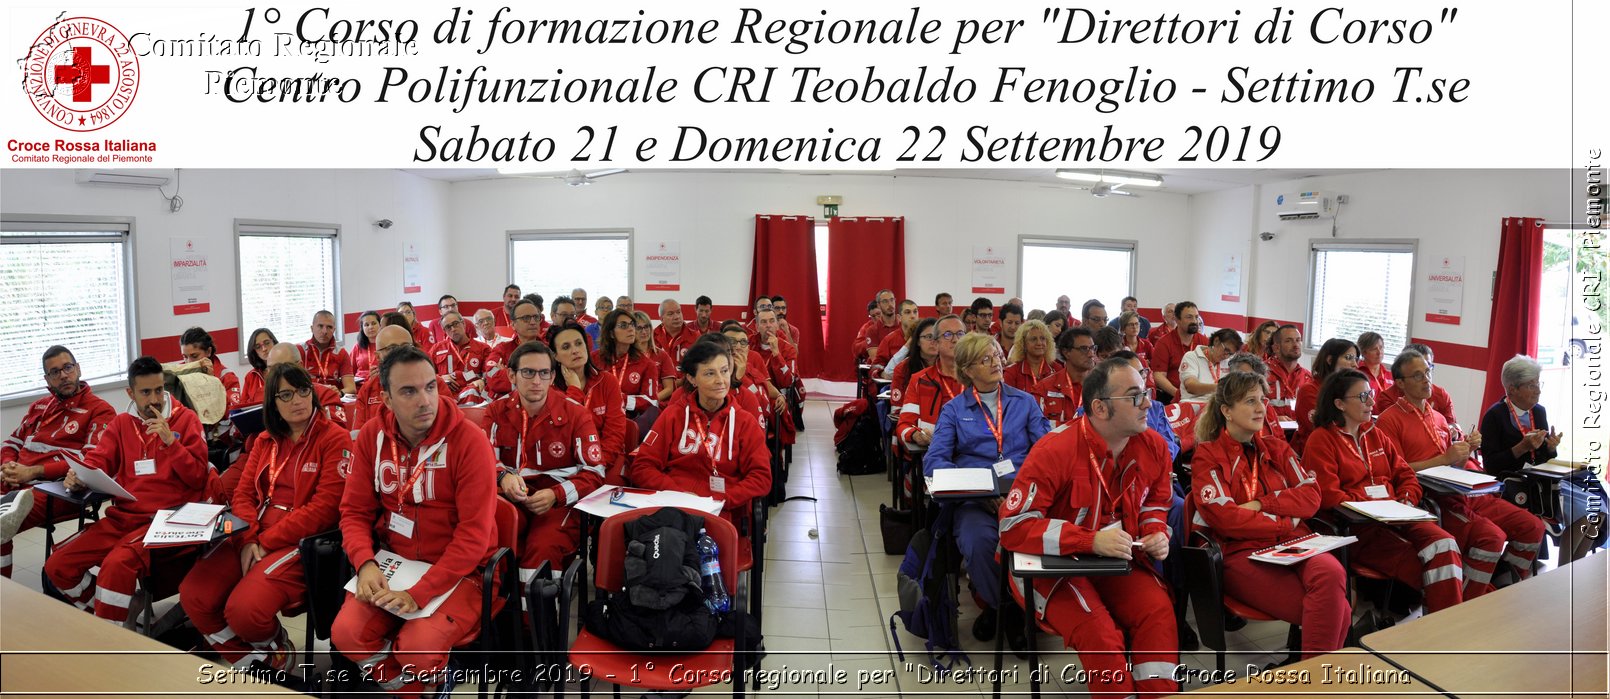 Settimo T.se 21 Settembre 2019 - 1 Corso regionale per "Direttori di Corso" - Croce Rossa Italiana